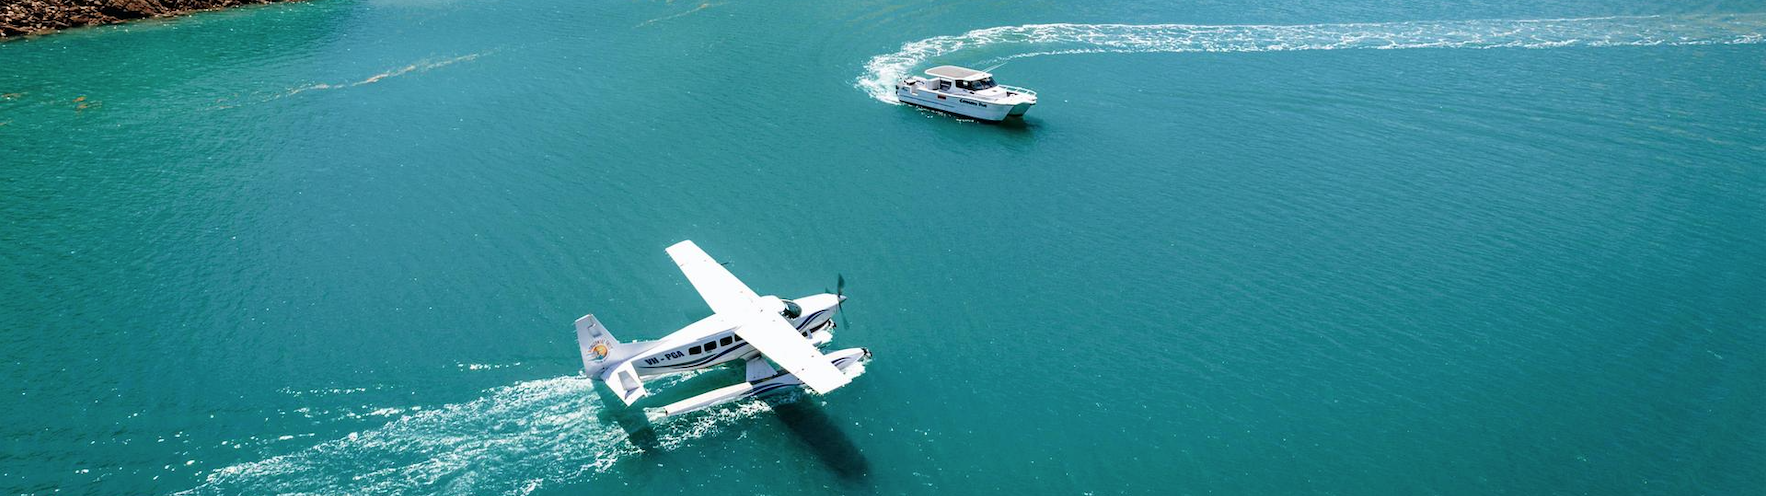 ديربي أستراليا طائرة وقارب في الماء